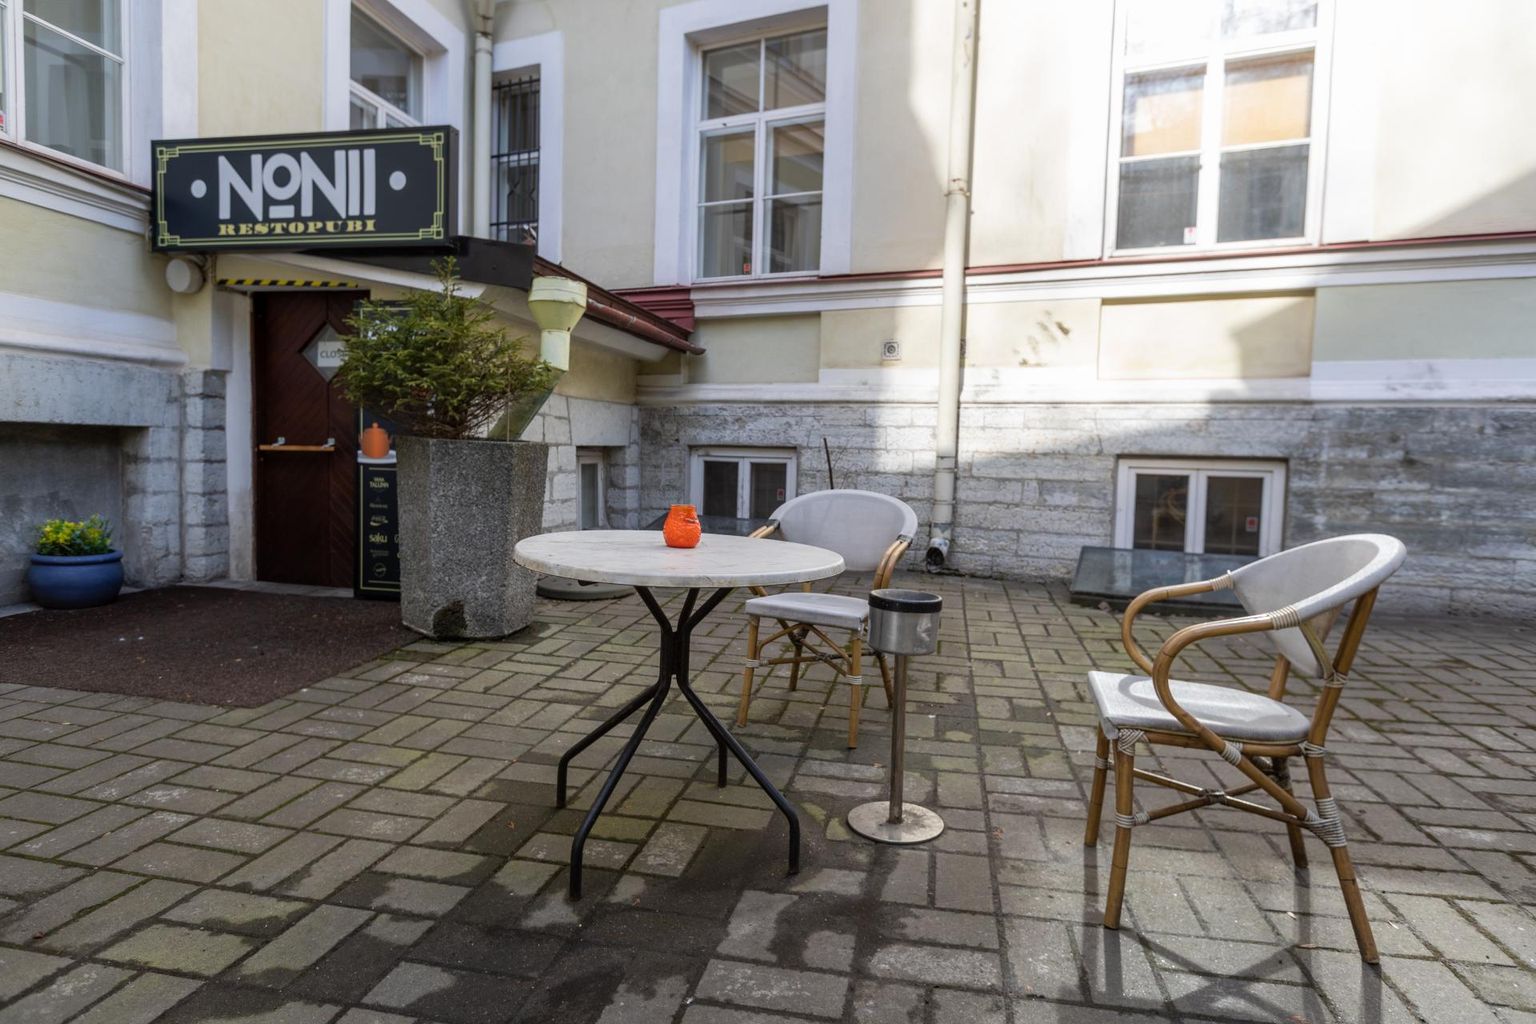 Kui praktiliselt Viru tänava nurgal asuva restorani päevakäive langes 17 euroni, otsustati uksed kinni panna.